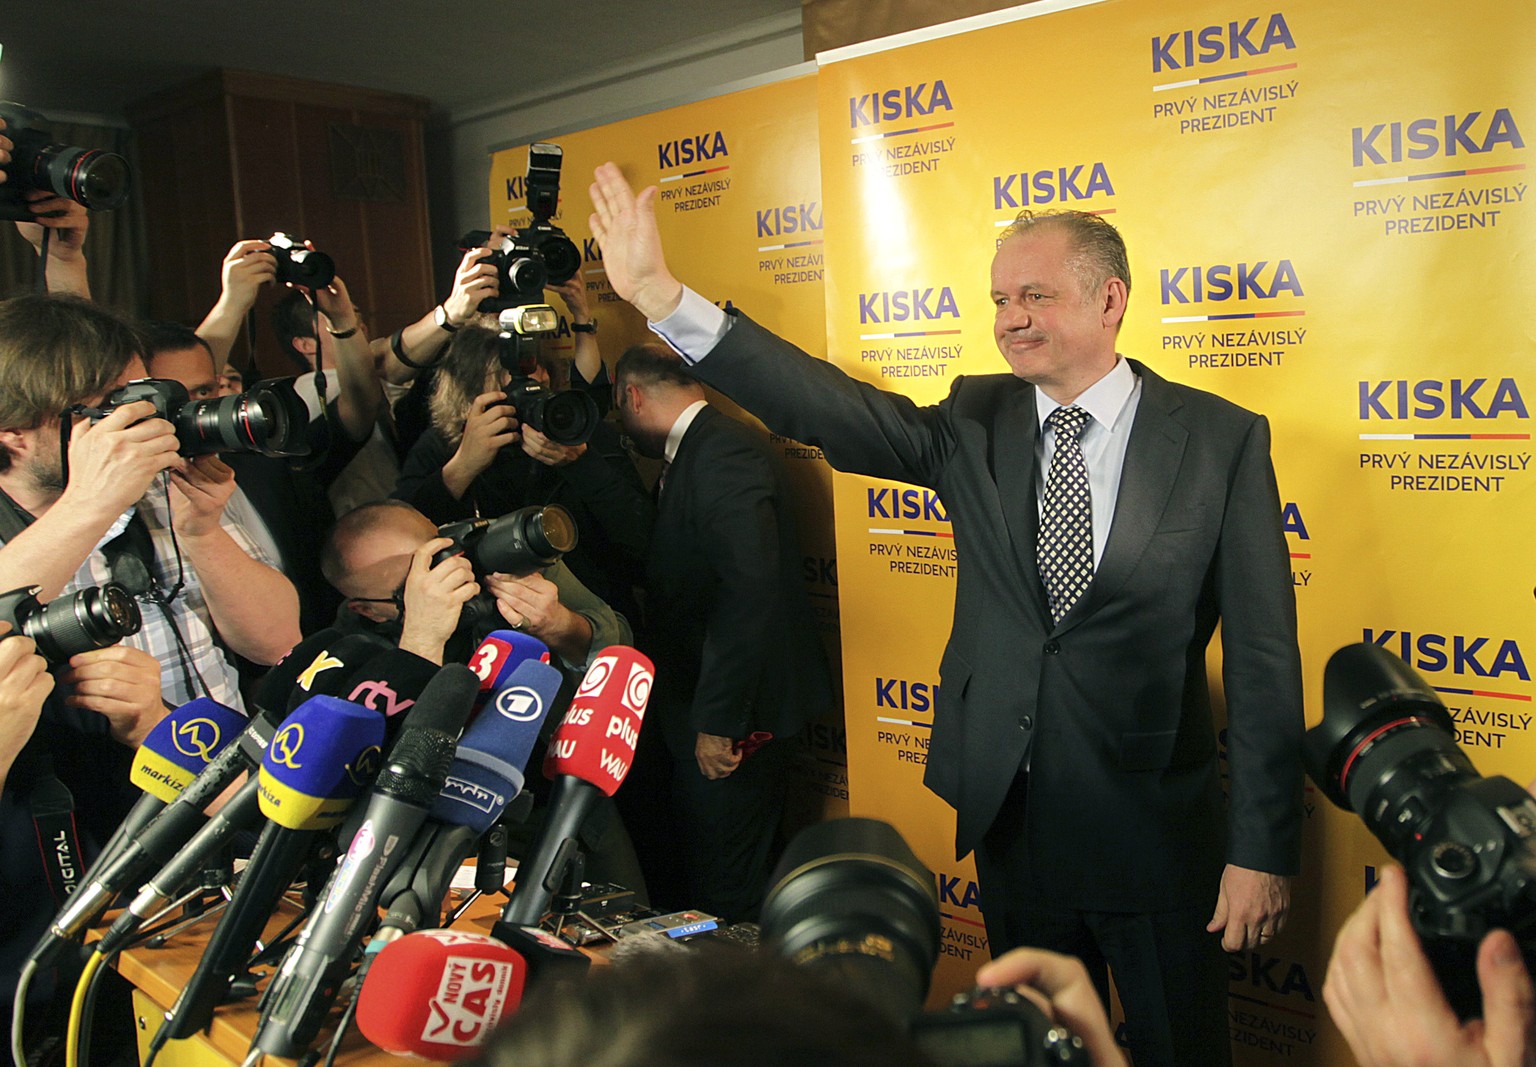 Andrej Kiska: Der neue Präsident der Slowakei hat bislang keine politische Erfahrung gesammelt.